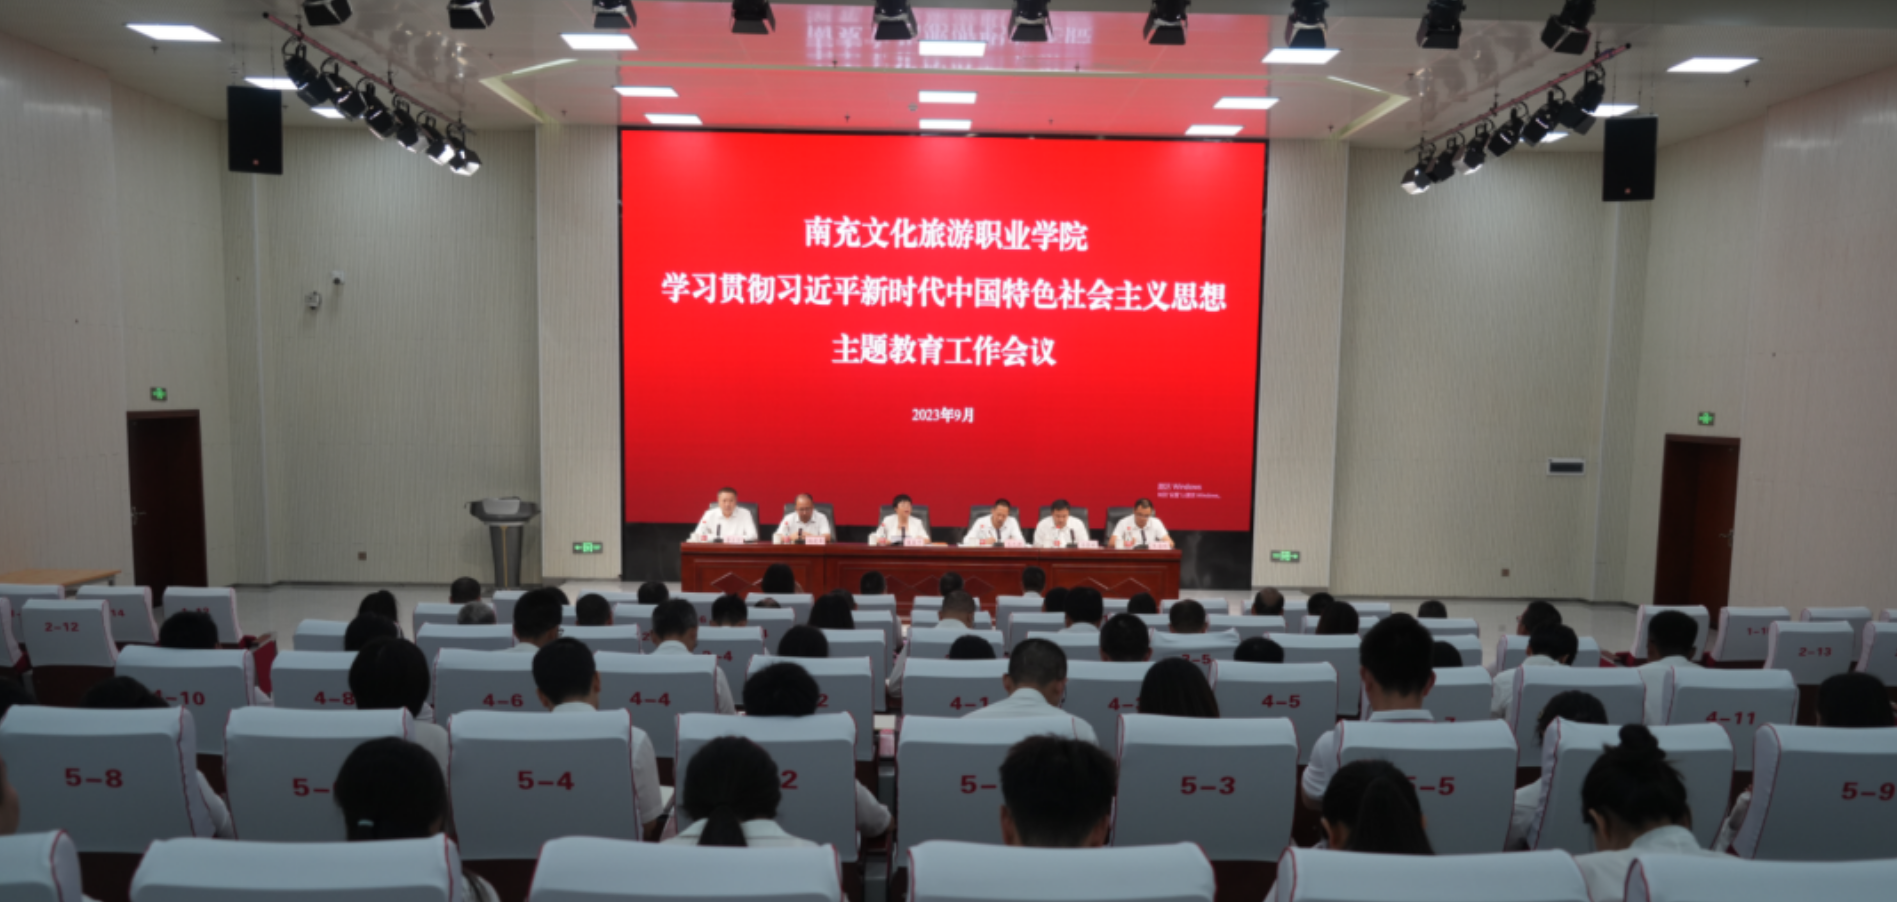 350VIP浦京集团召开学习贯彻习近平新时代中国特色社会主义思想主题教育工作会议